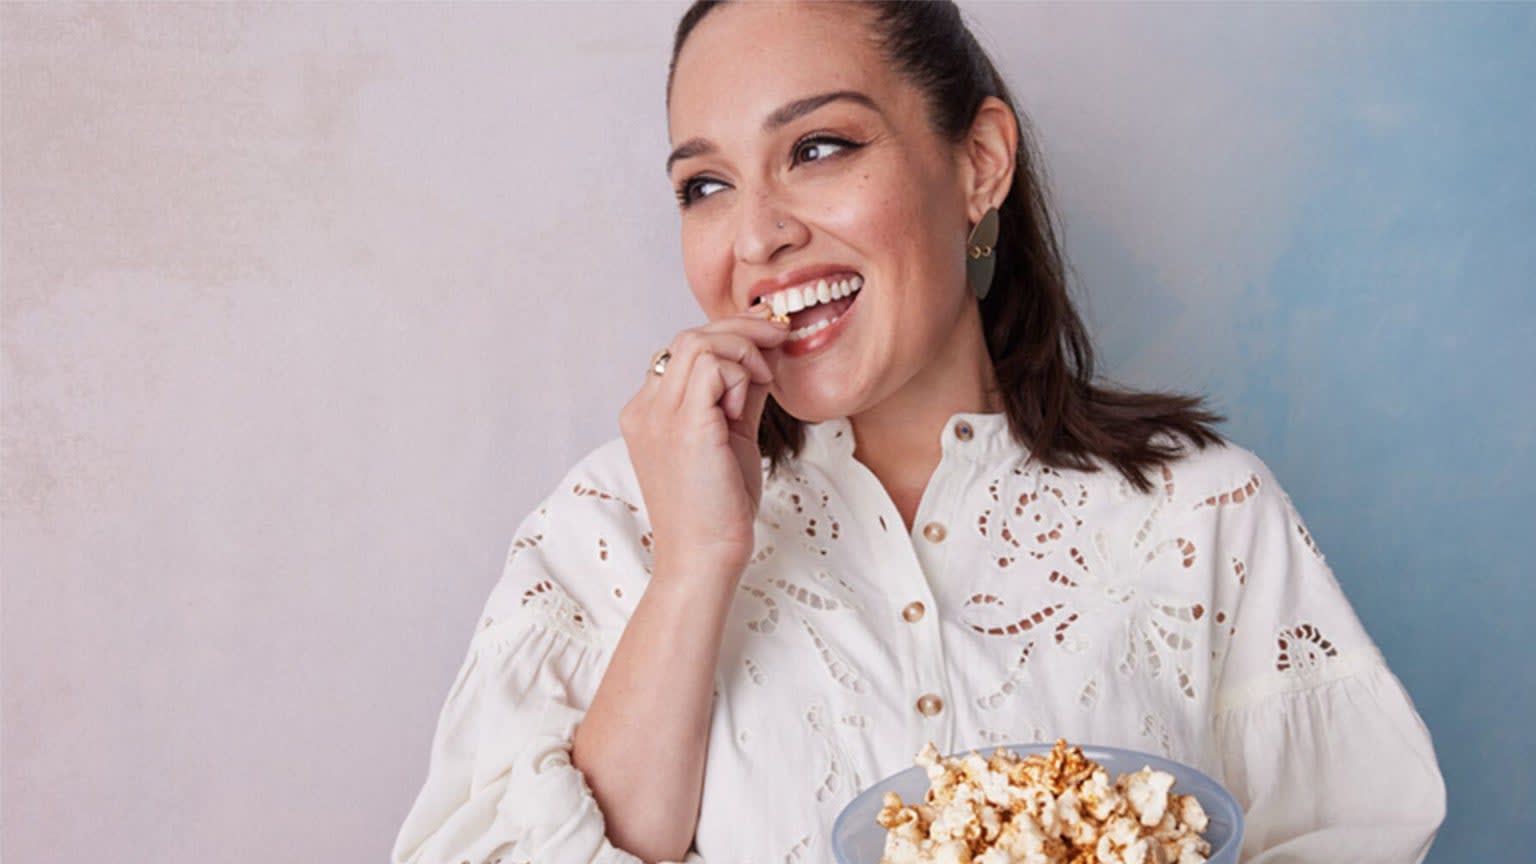 Junge Frau mit braunen Haaren in weisser Bluse isst Popcorn